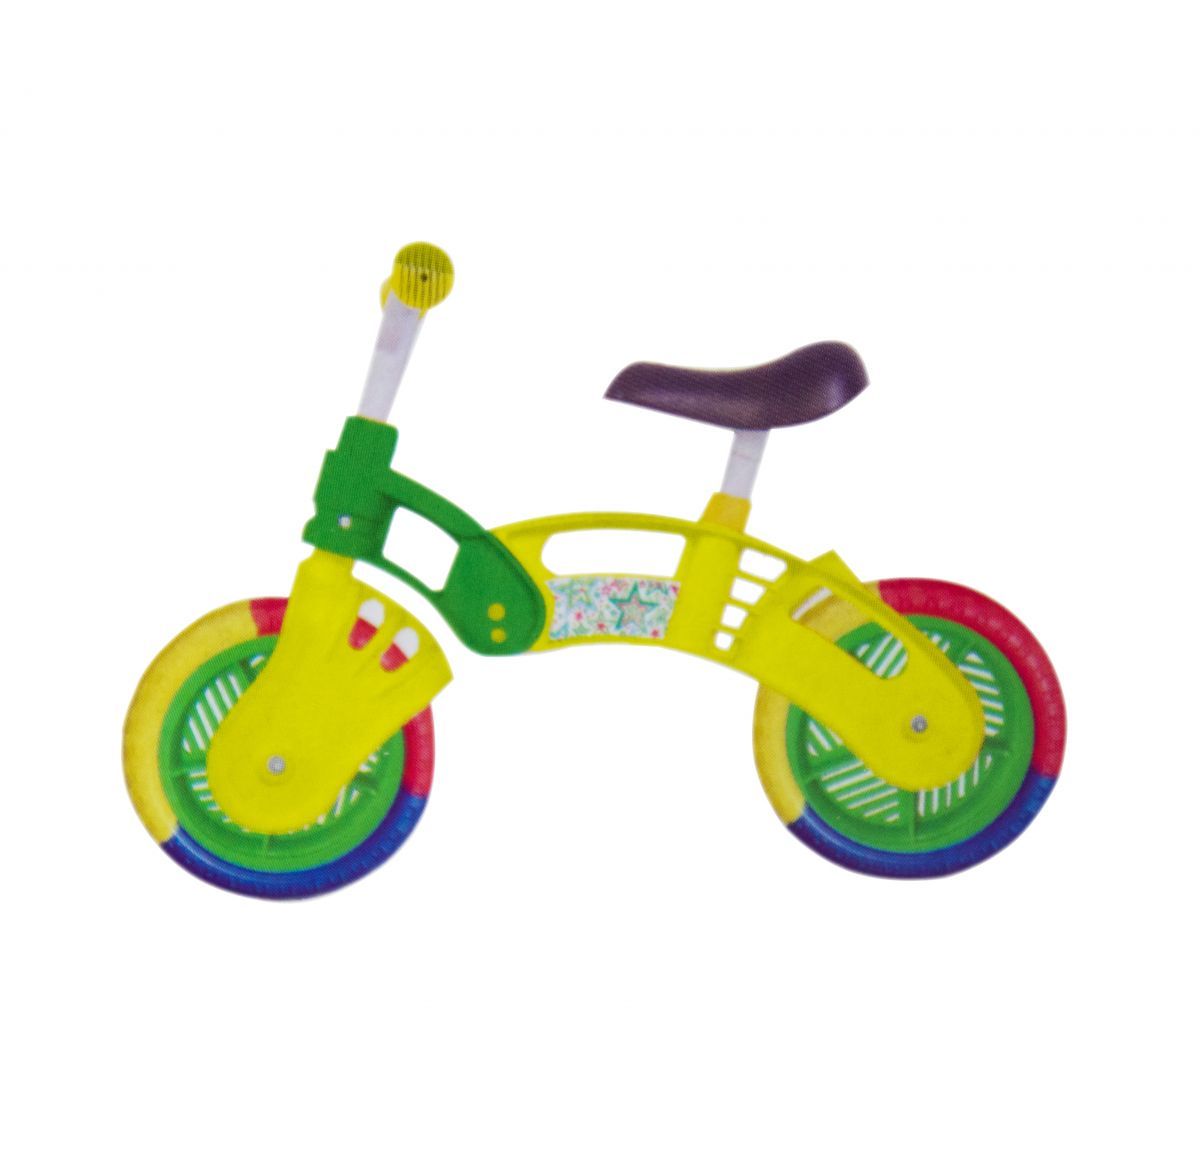 Велобіг зелений/жовтий (колеса 10)